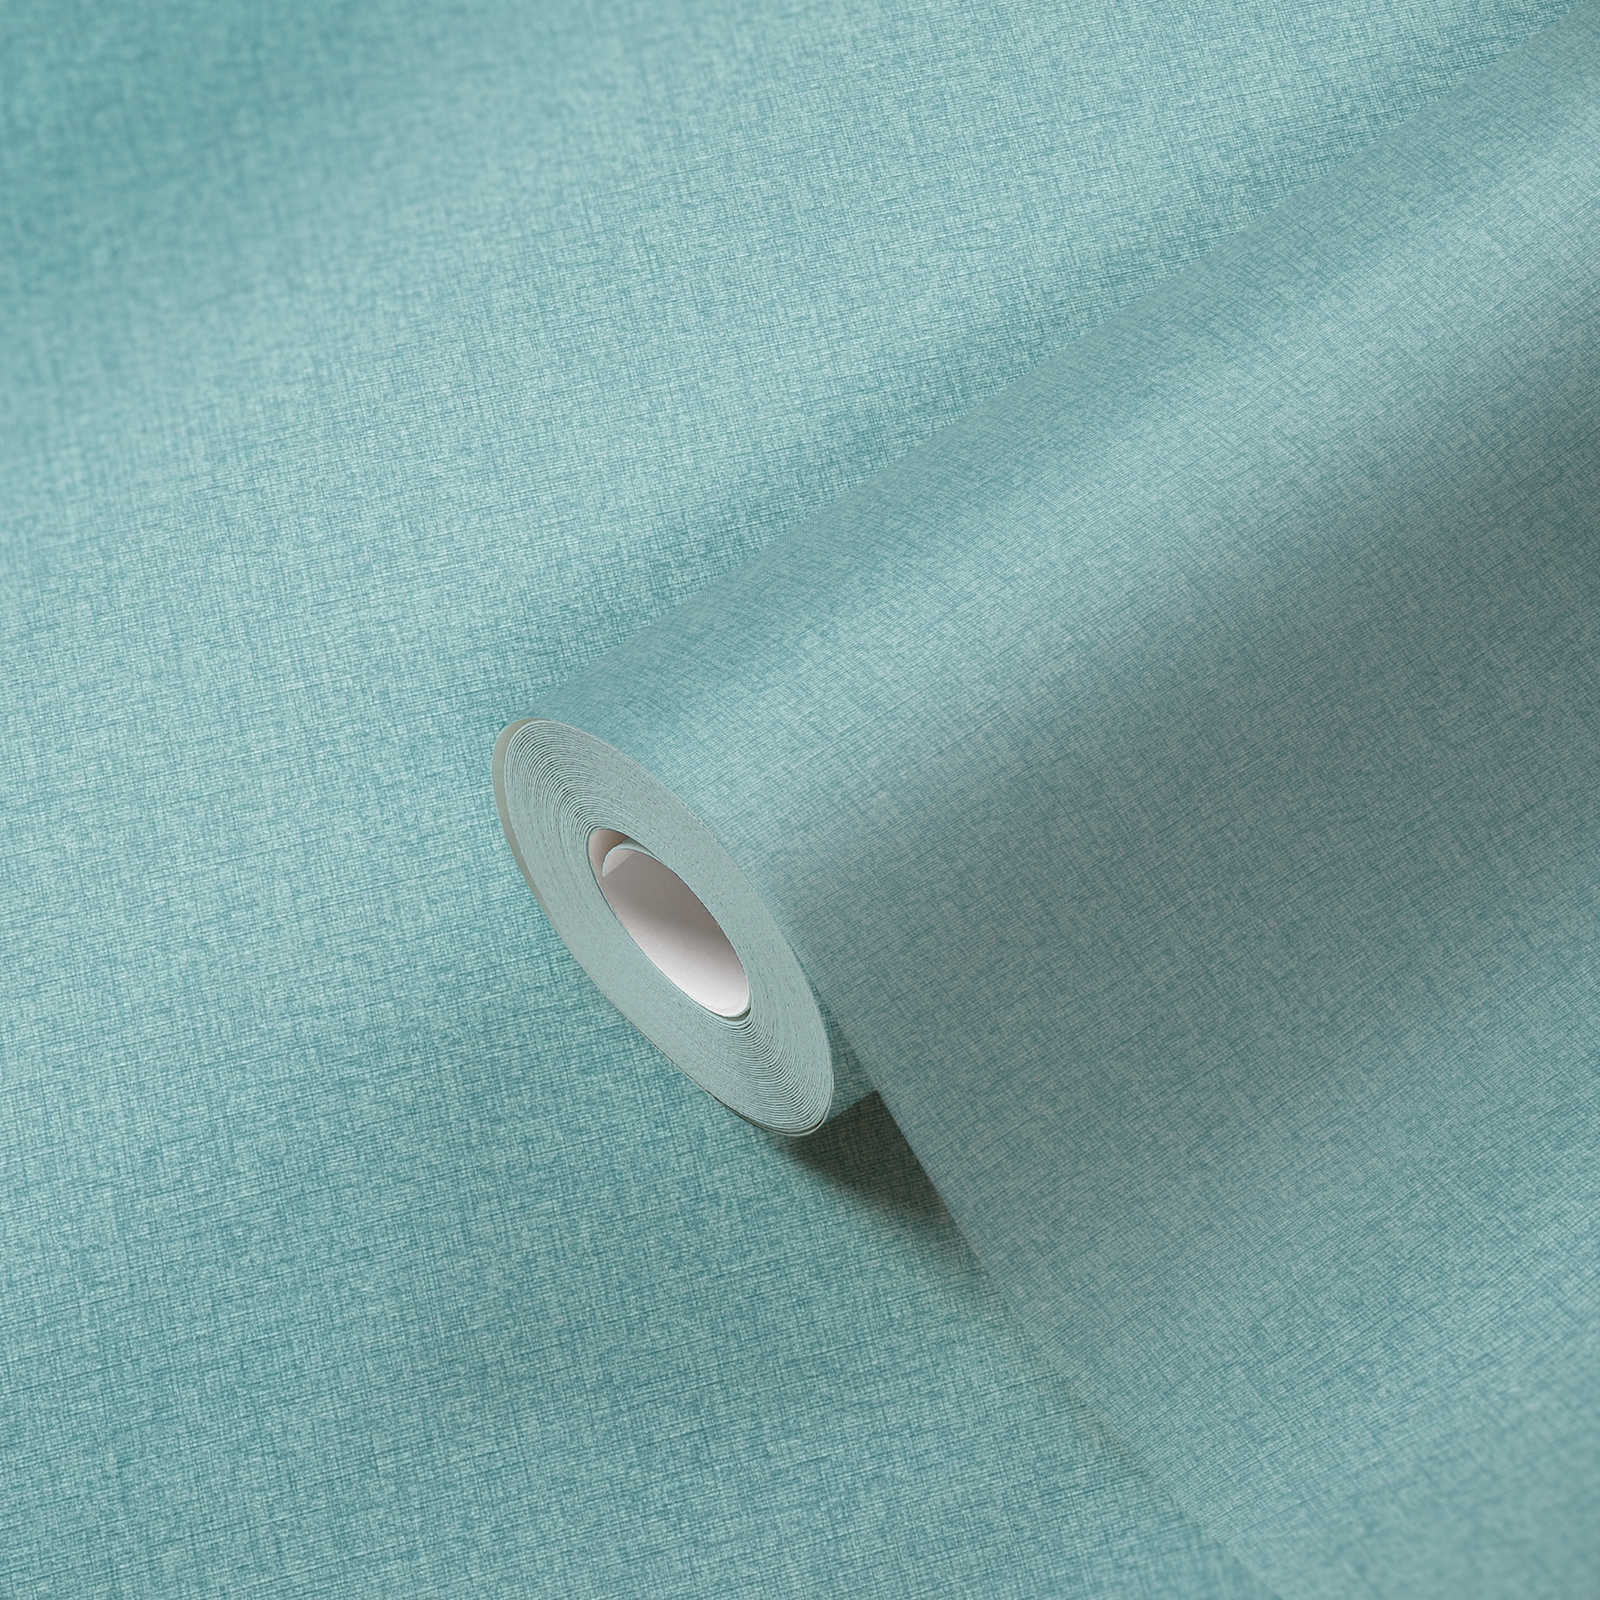             Einfarbige Vliestapete in Gewebe-Optik mit leichter Struktur, matt – Türkis, Blau, Hellblau
        